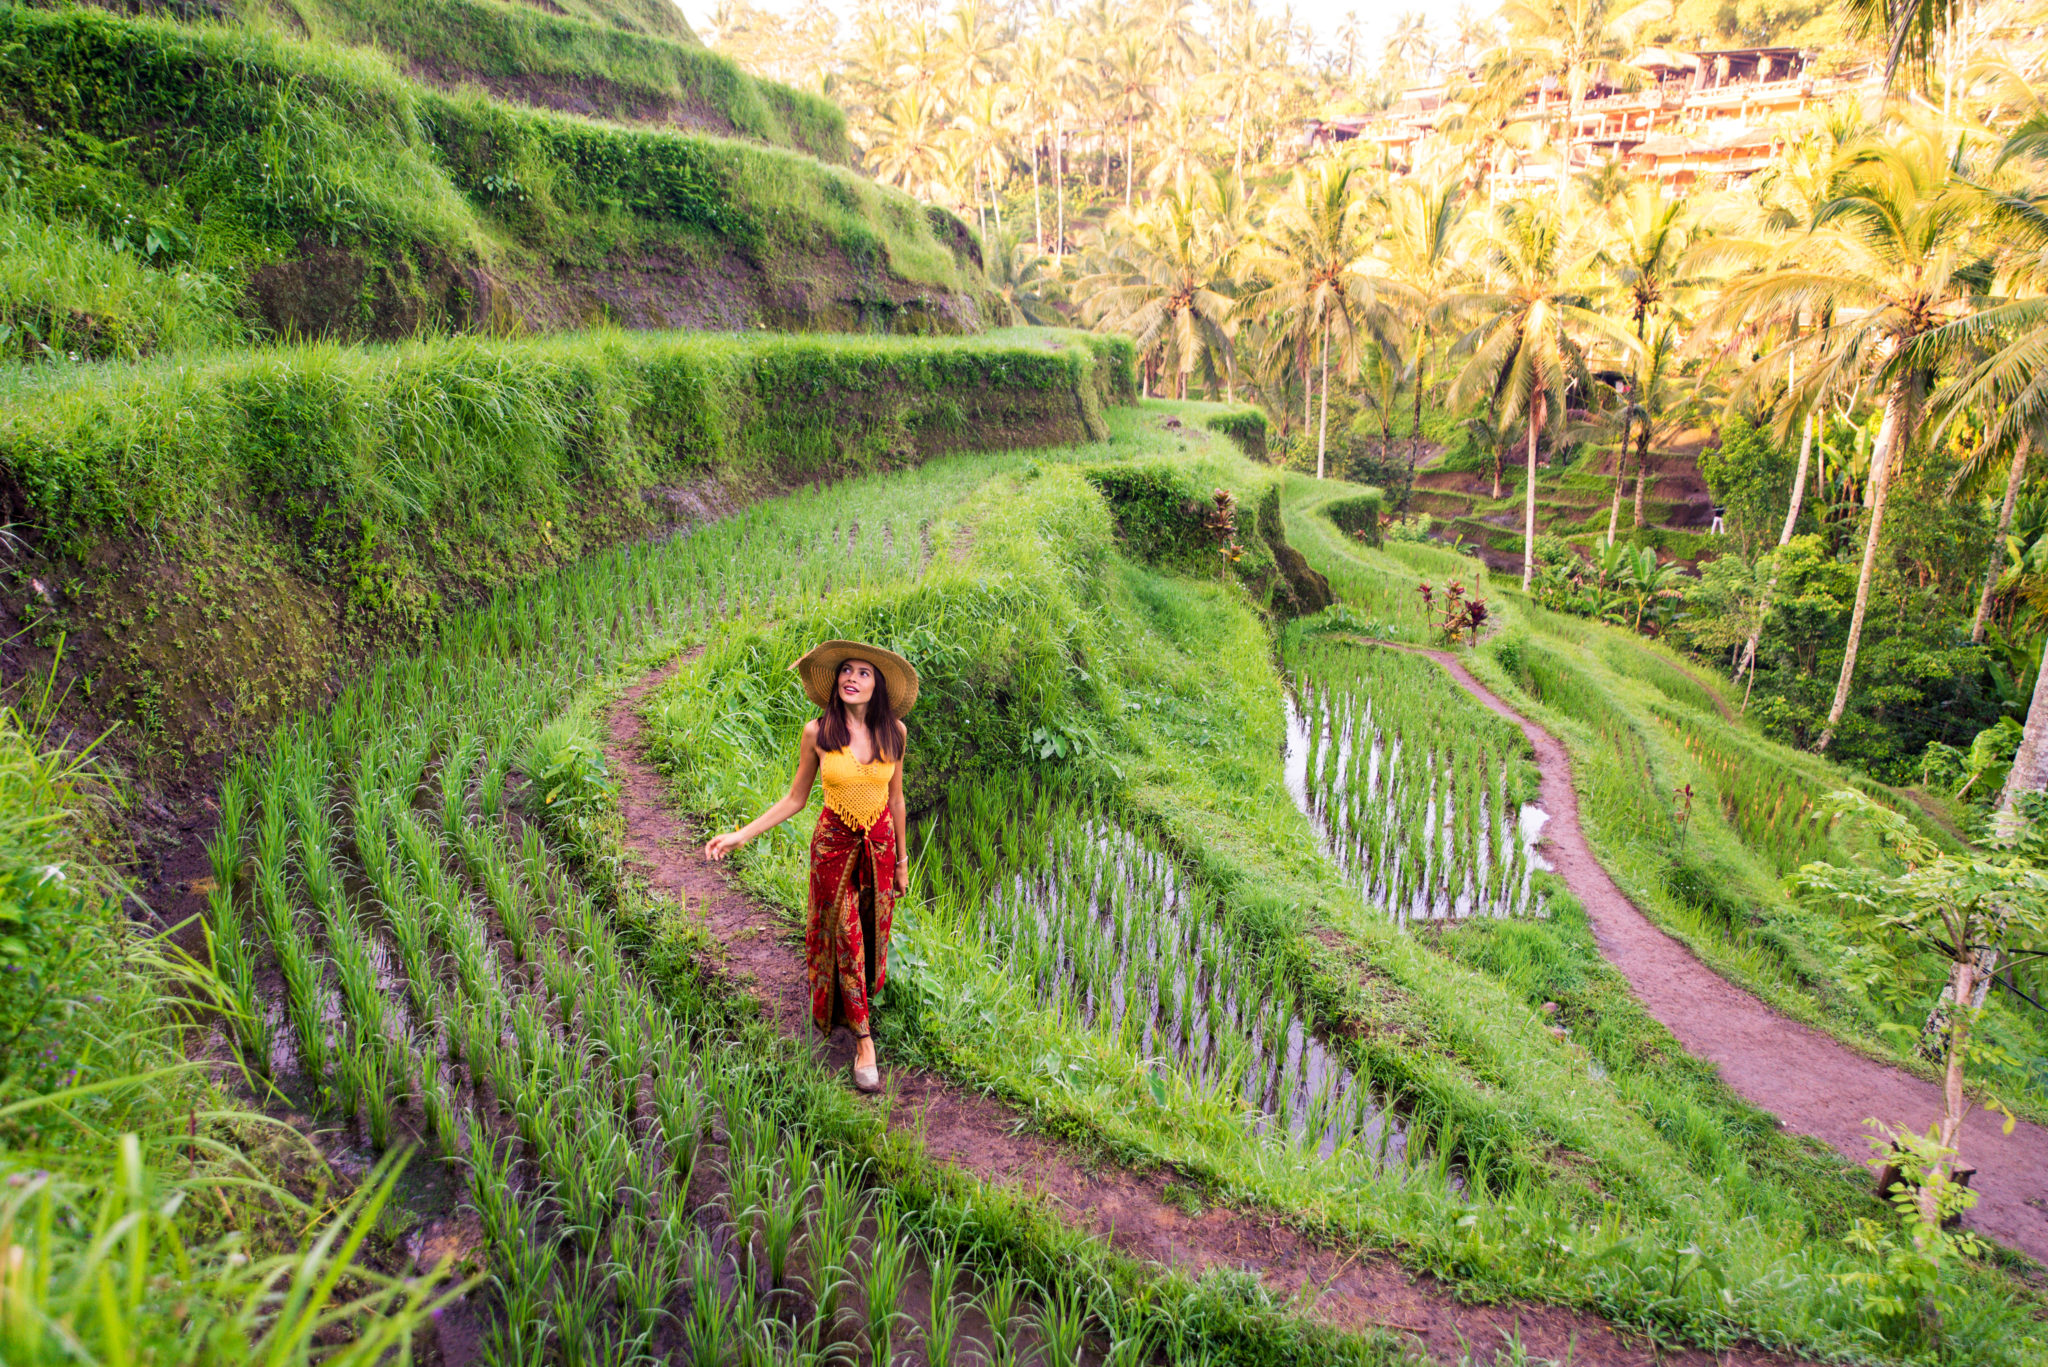 Woman at Tegalalang rice terrace in Bali